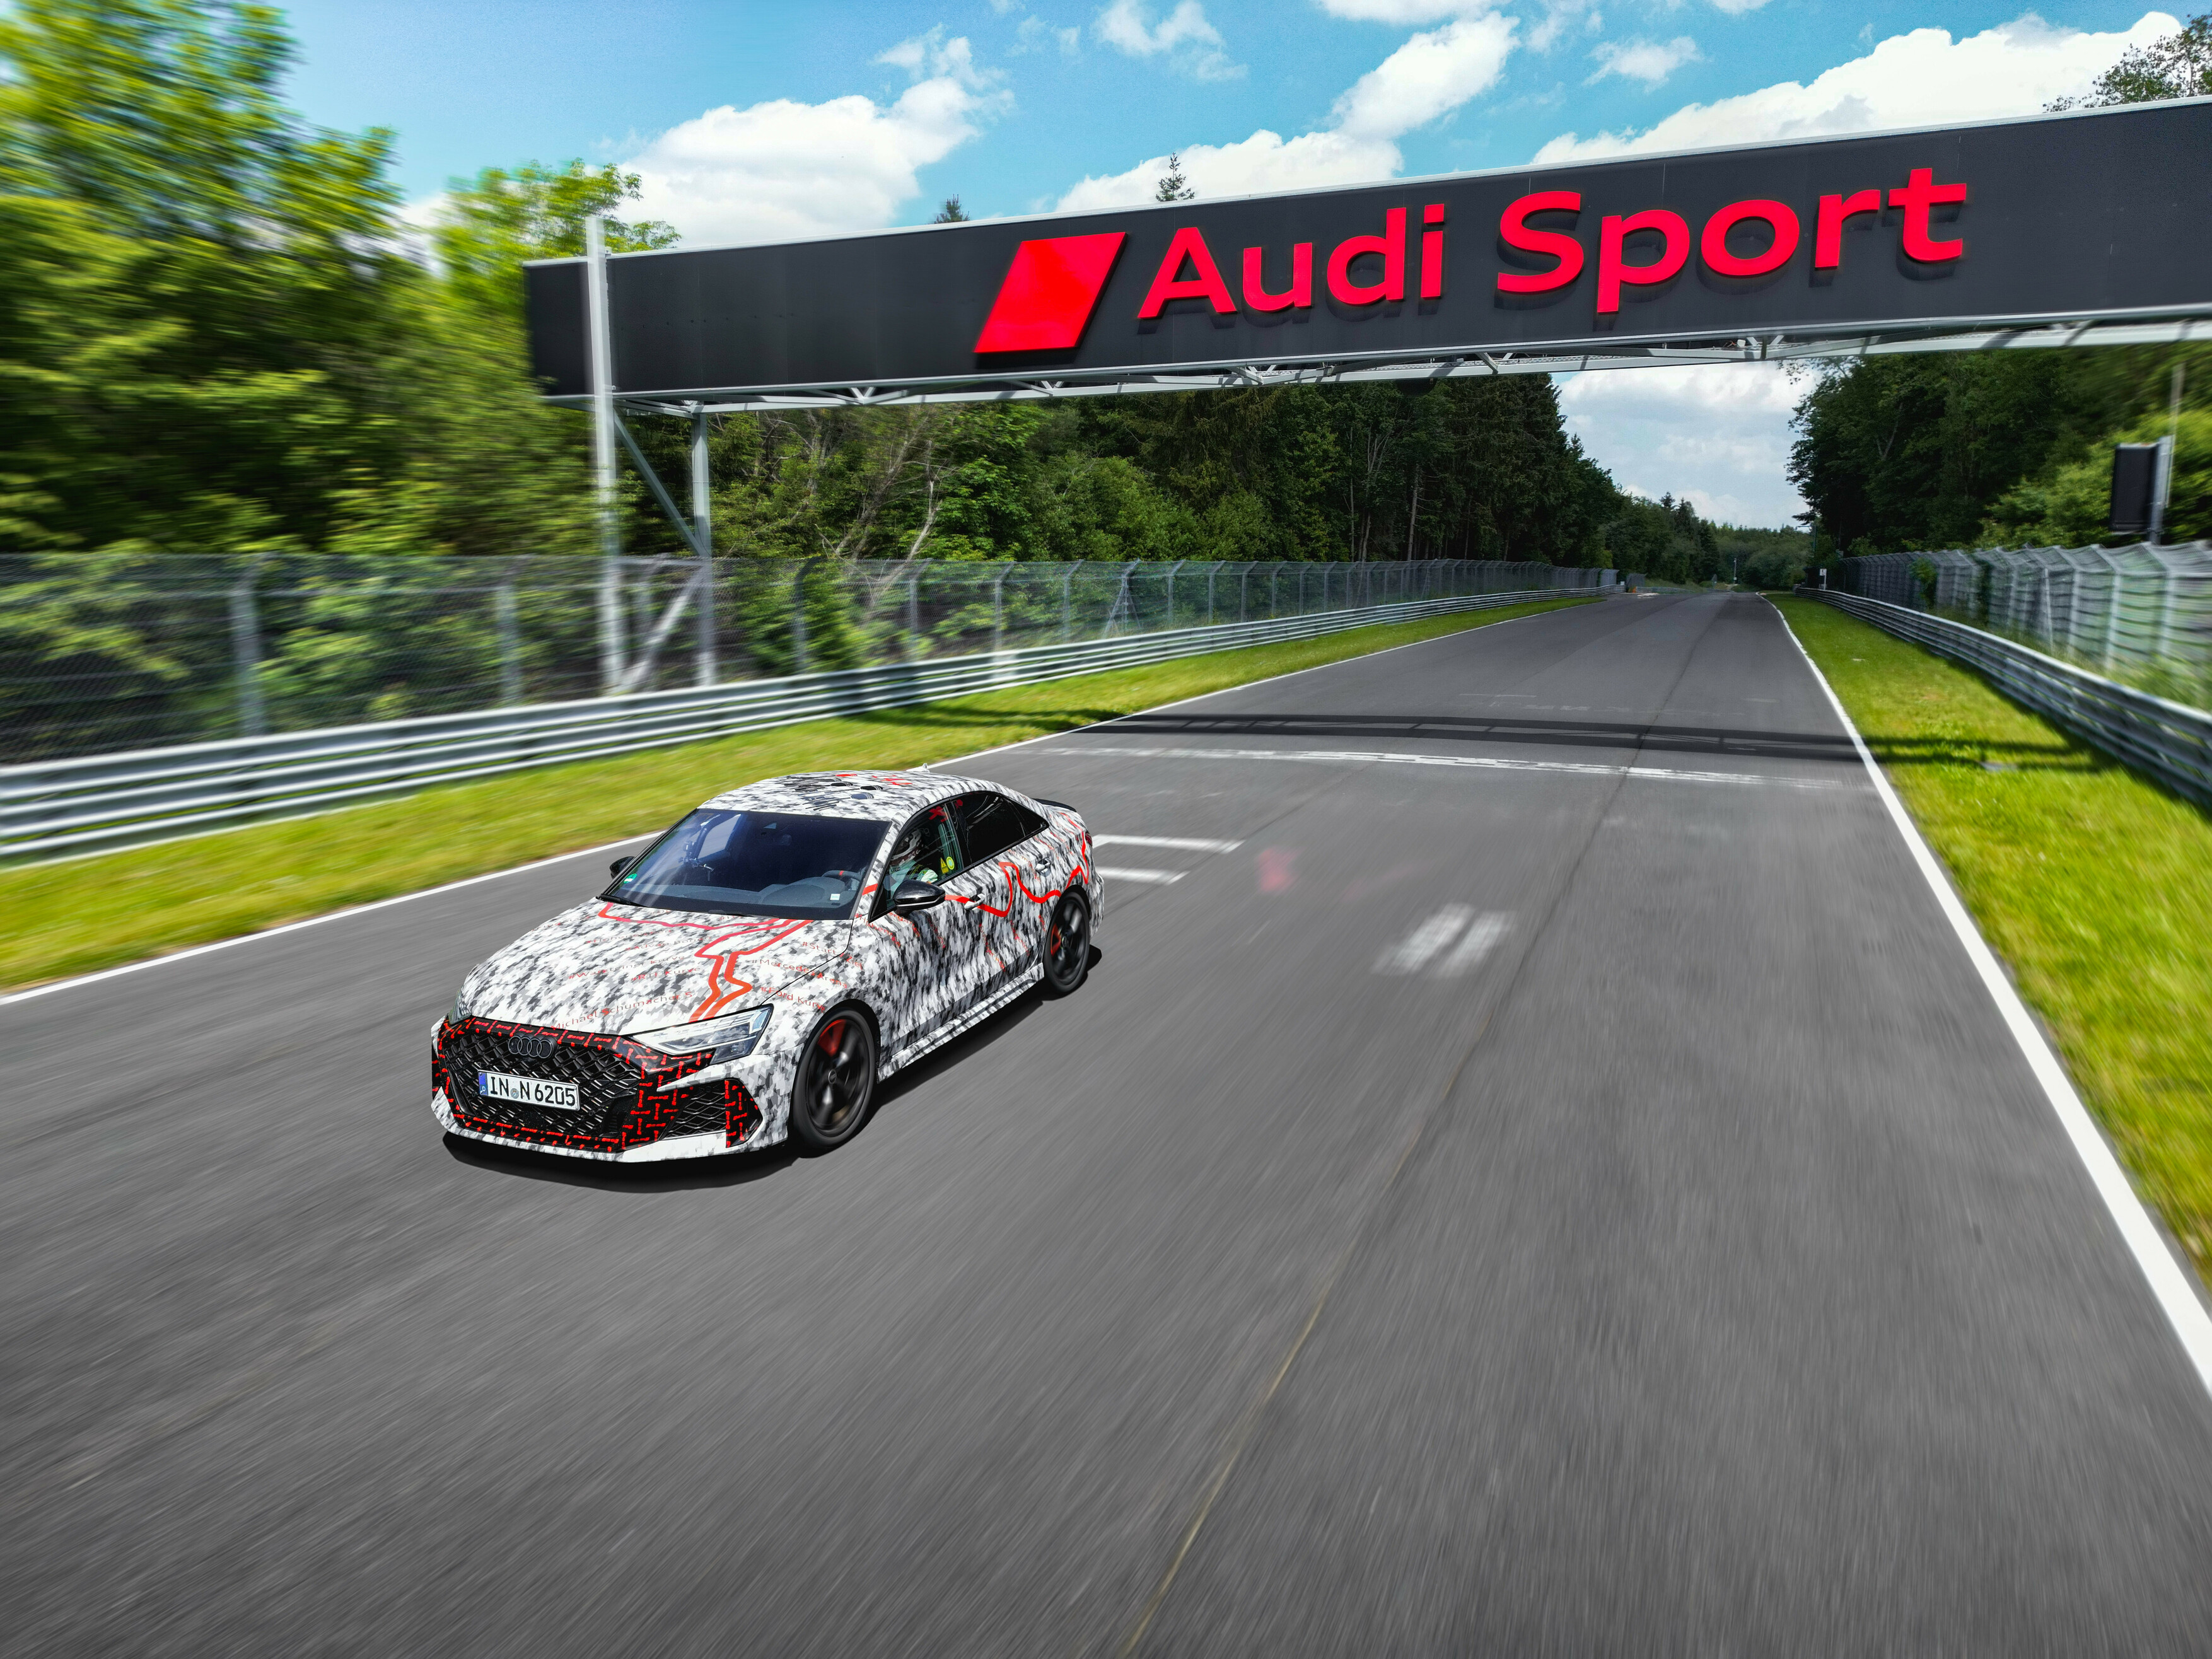 Rekord okrążenia nowego, przedprodukcyjnego modelu Audi RS 3